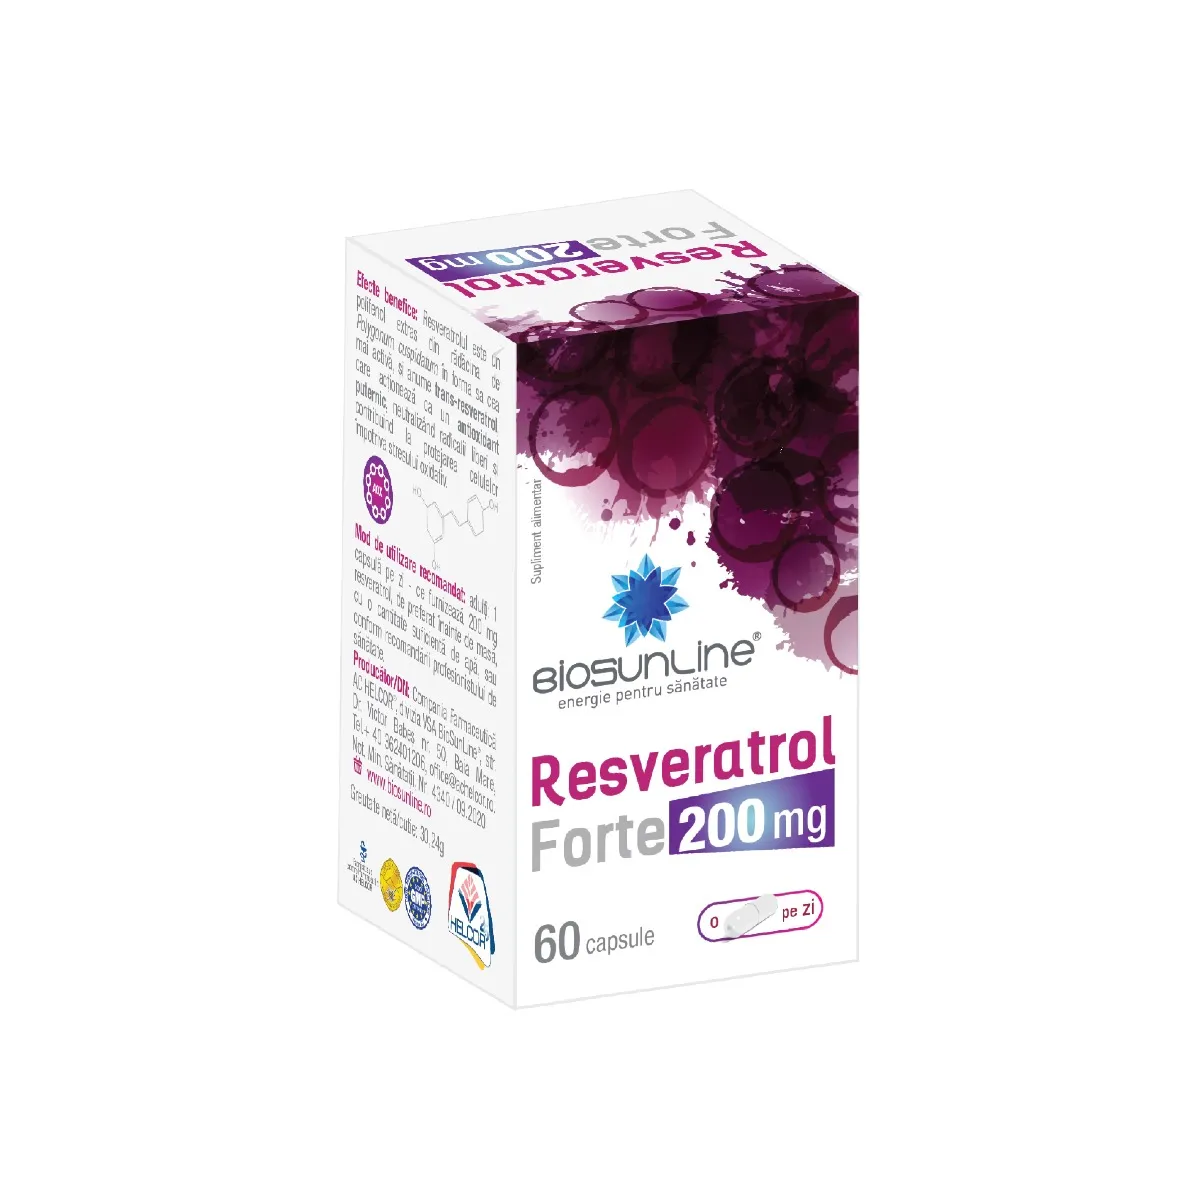 Resveratrol Forte 200mg, 60 capsule, BioSunLine